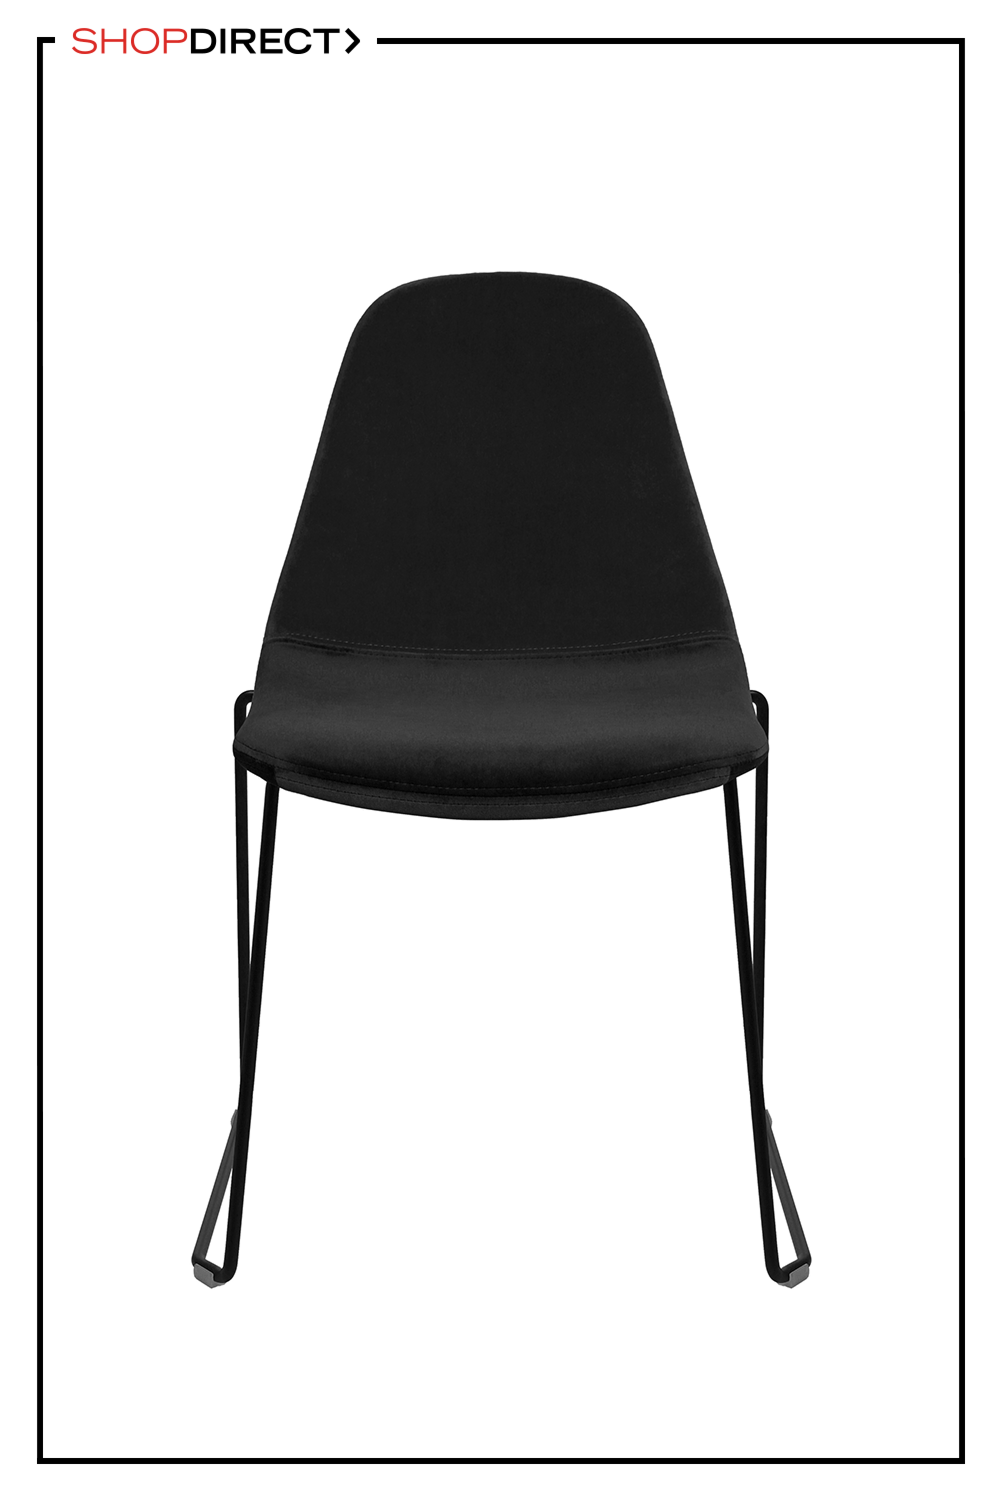 Stuhl mit schwarzen Kufen